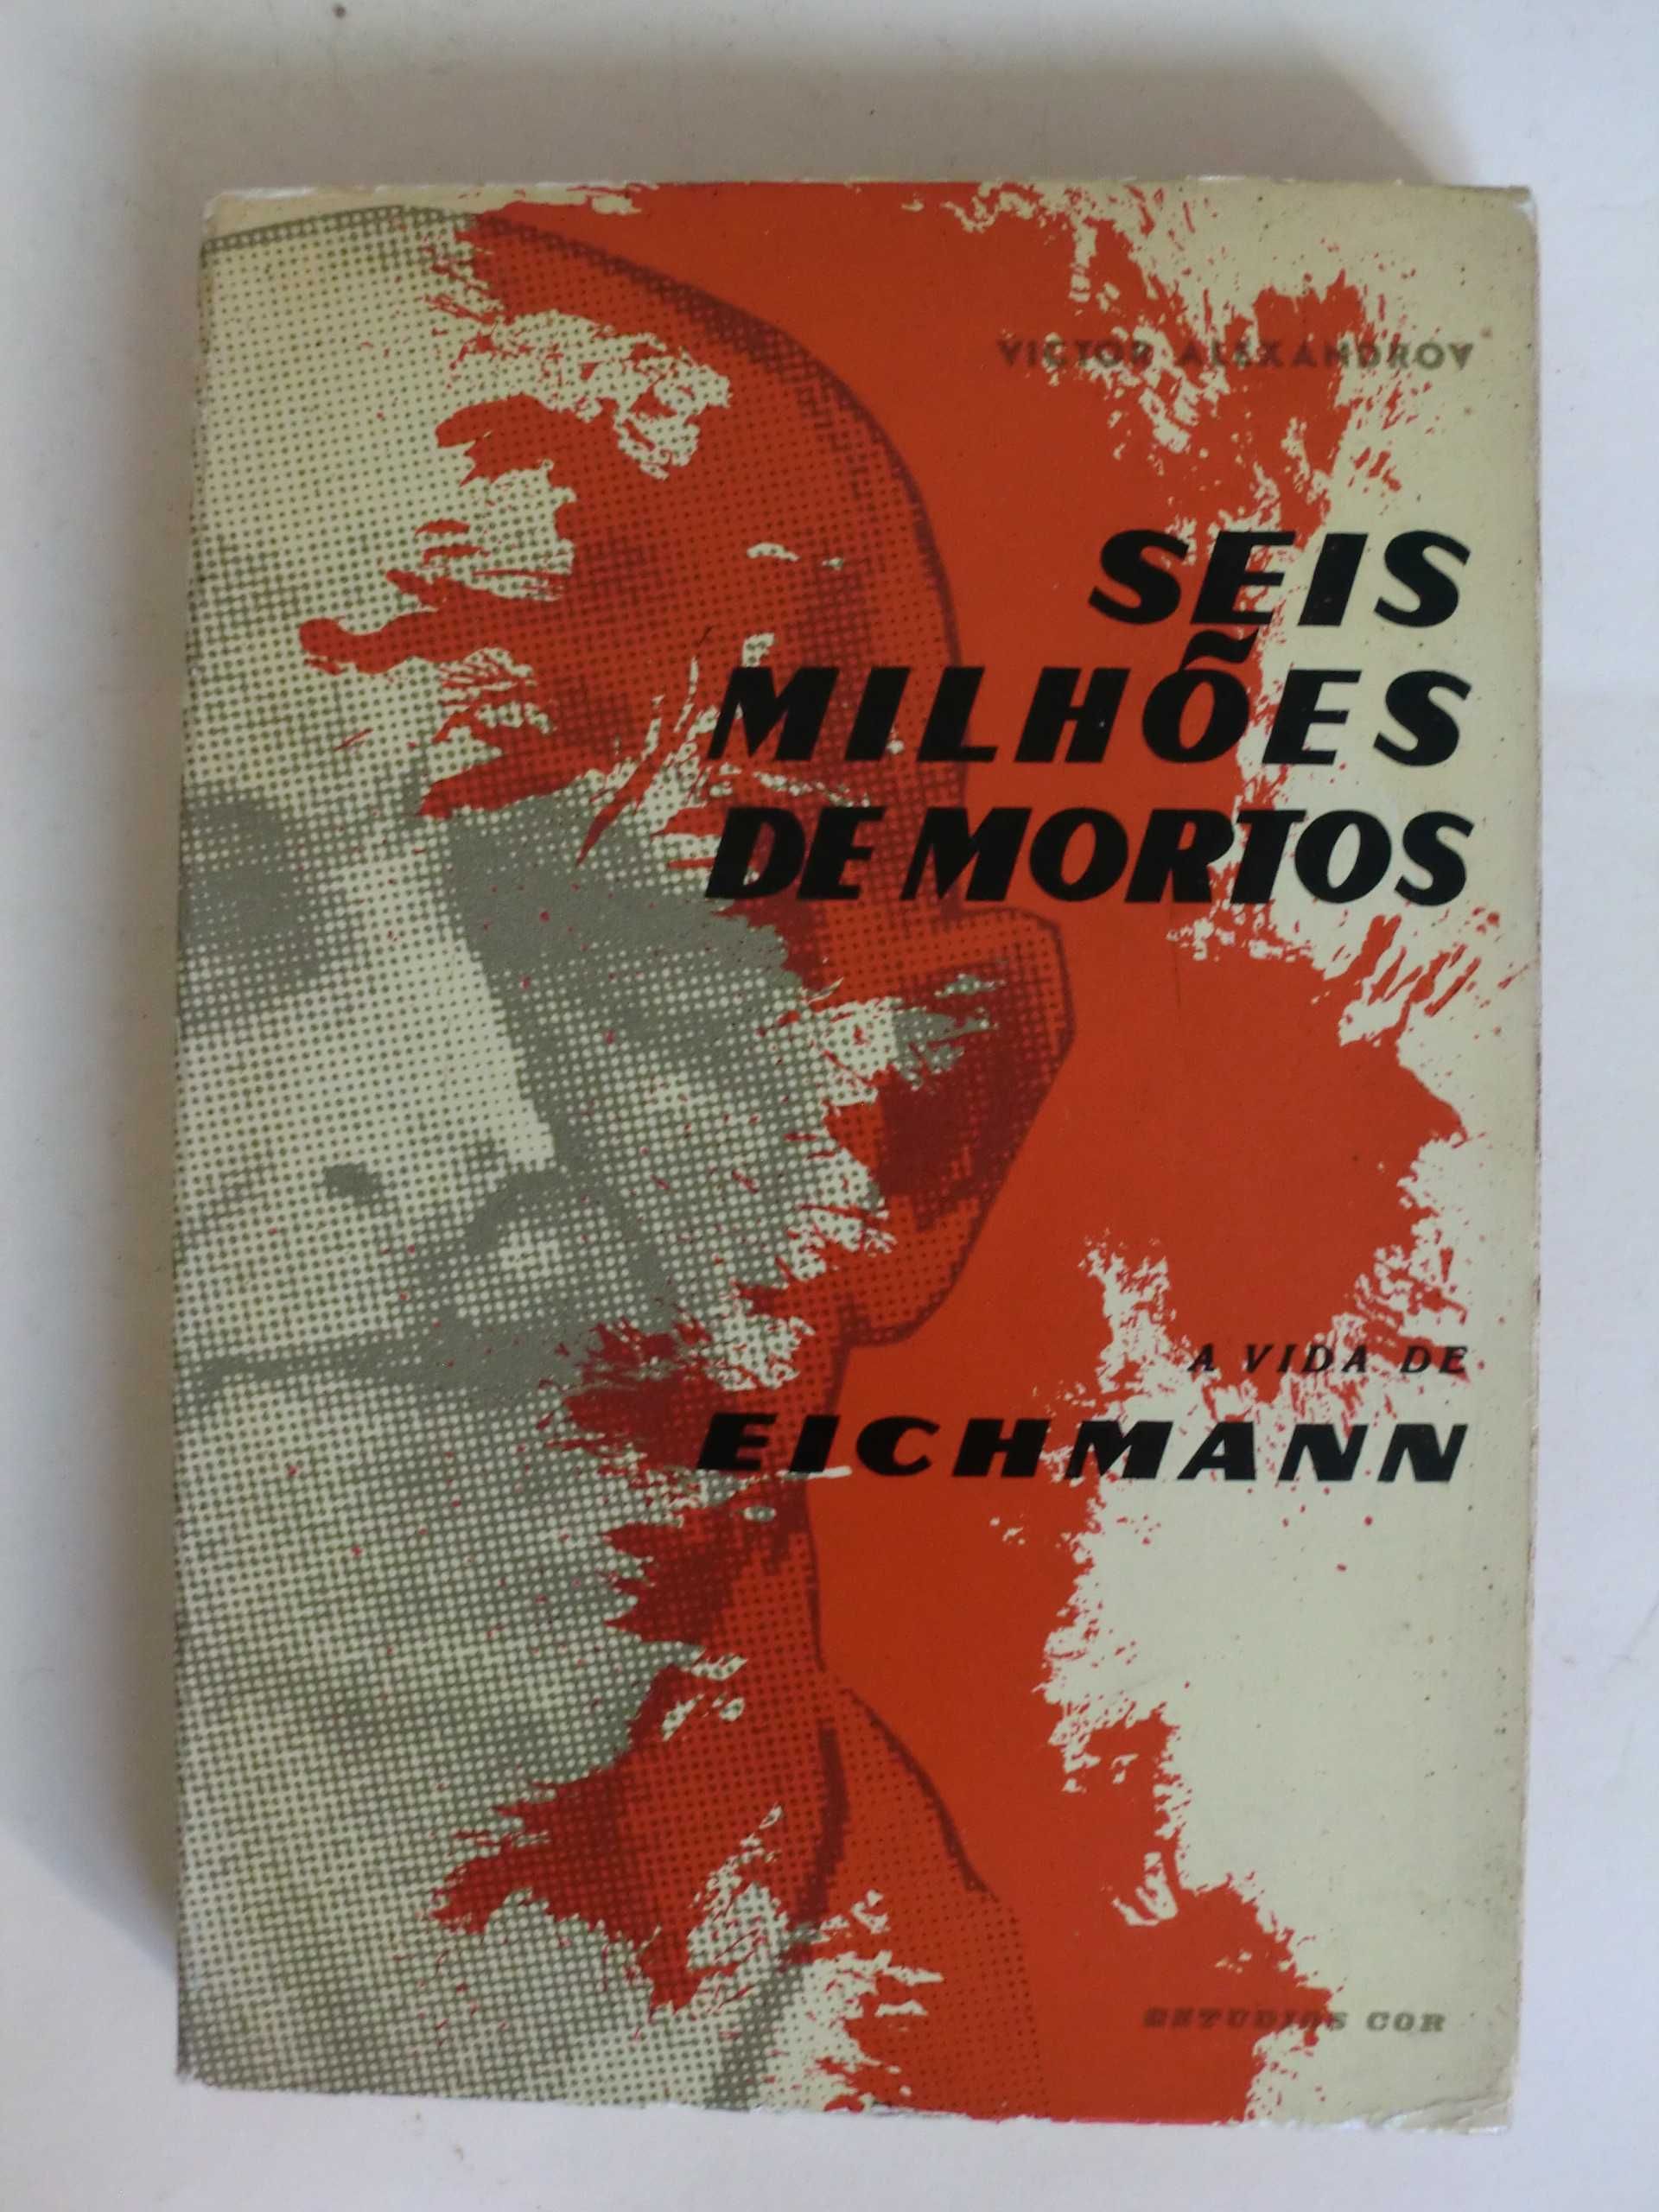 Seis Milões de Mortos -A Vida de Eichmann
de Victor Alexandrov